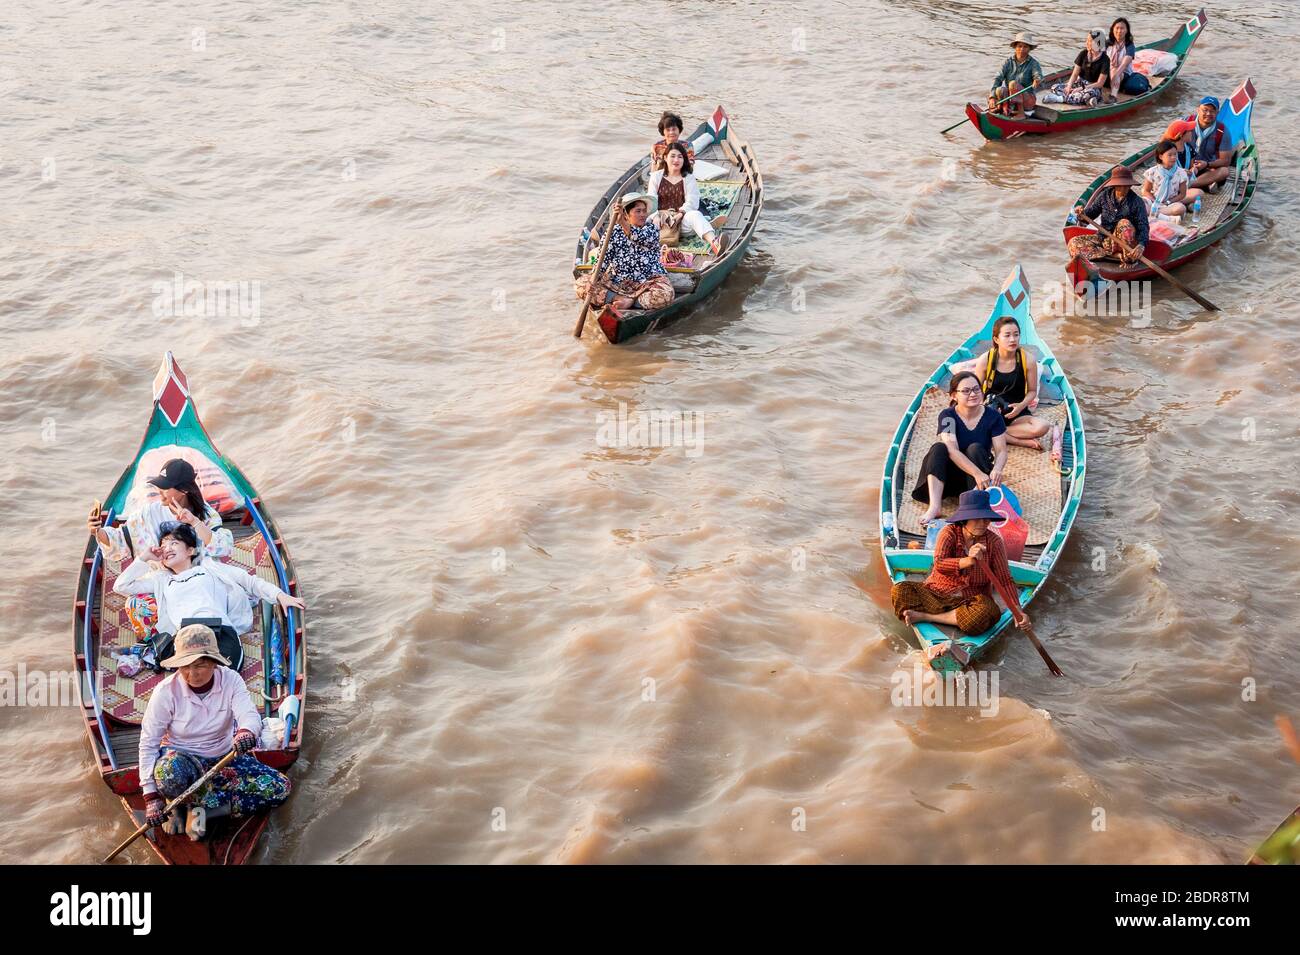 Einheimische Frauen laden Touristen zu einer Bootsfahrt durch die Sümpfe und Dschungelflüsse am Rande des Tonle SAP Sees, Kampong Phluk, Kambodscha ein. Stockfoto